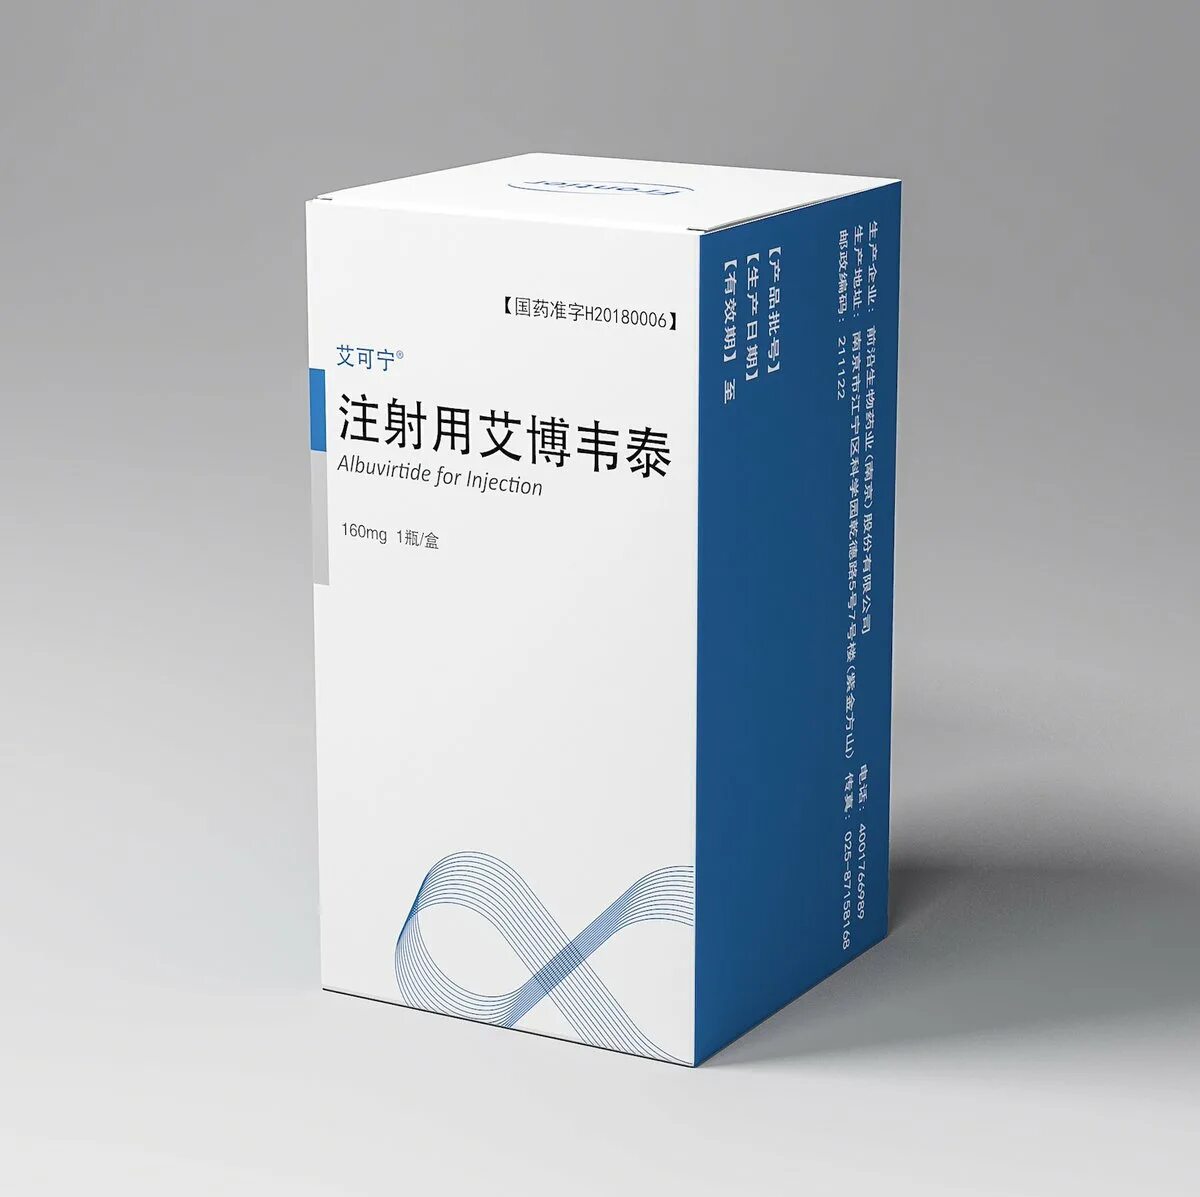 Завицефта цена. Альбувиртид. Китайские таблетки от ВИЧ. Overseas китайские таблетки. Препараты инъекционные для лечения СПИДА.